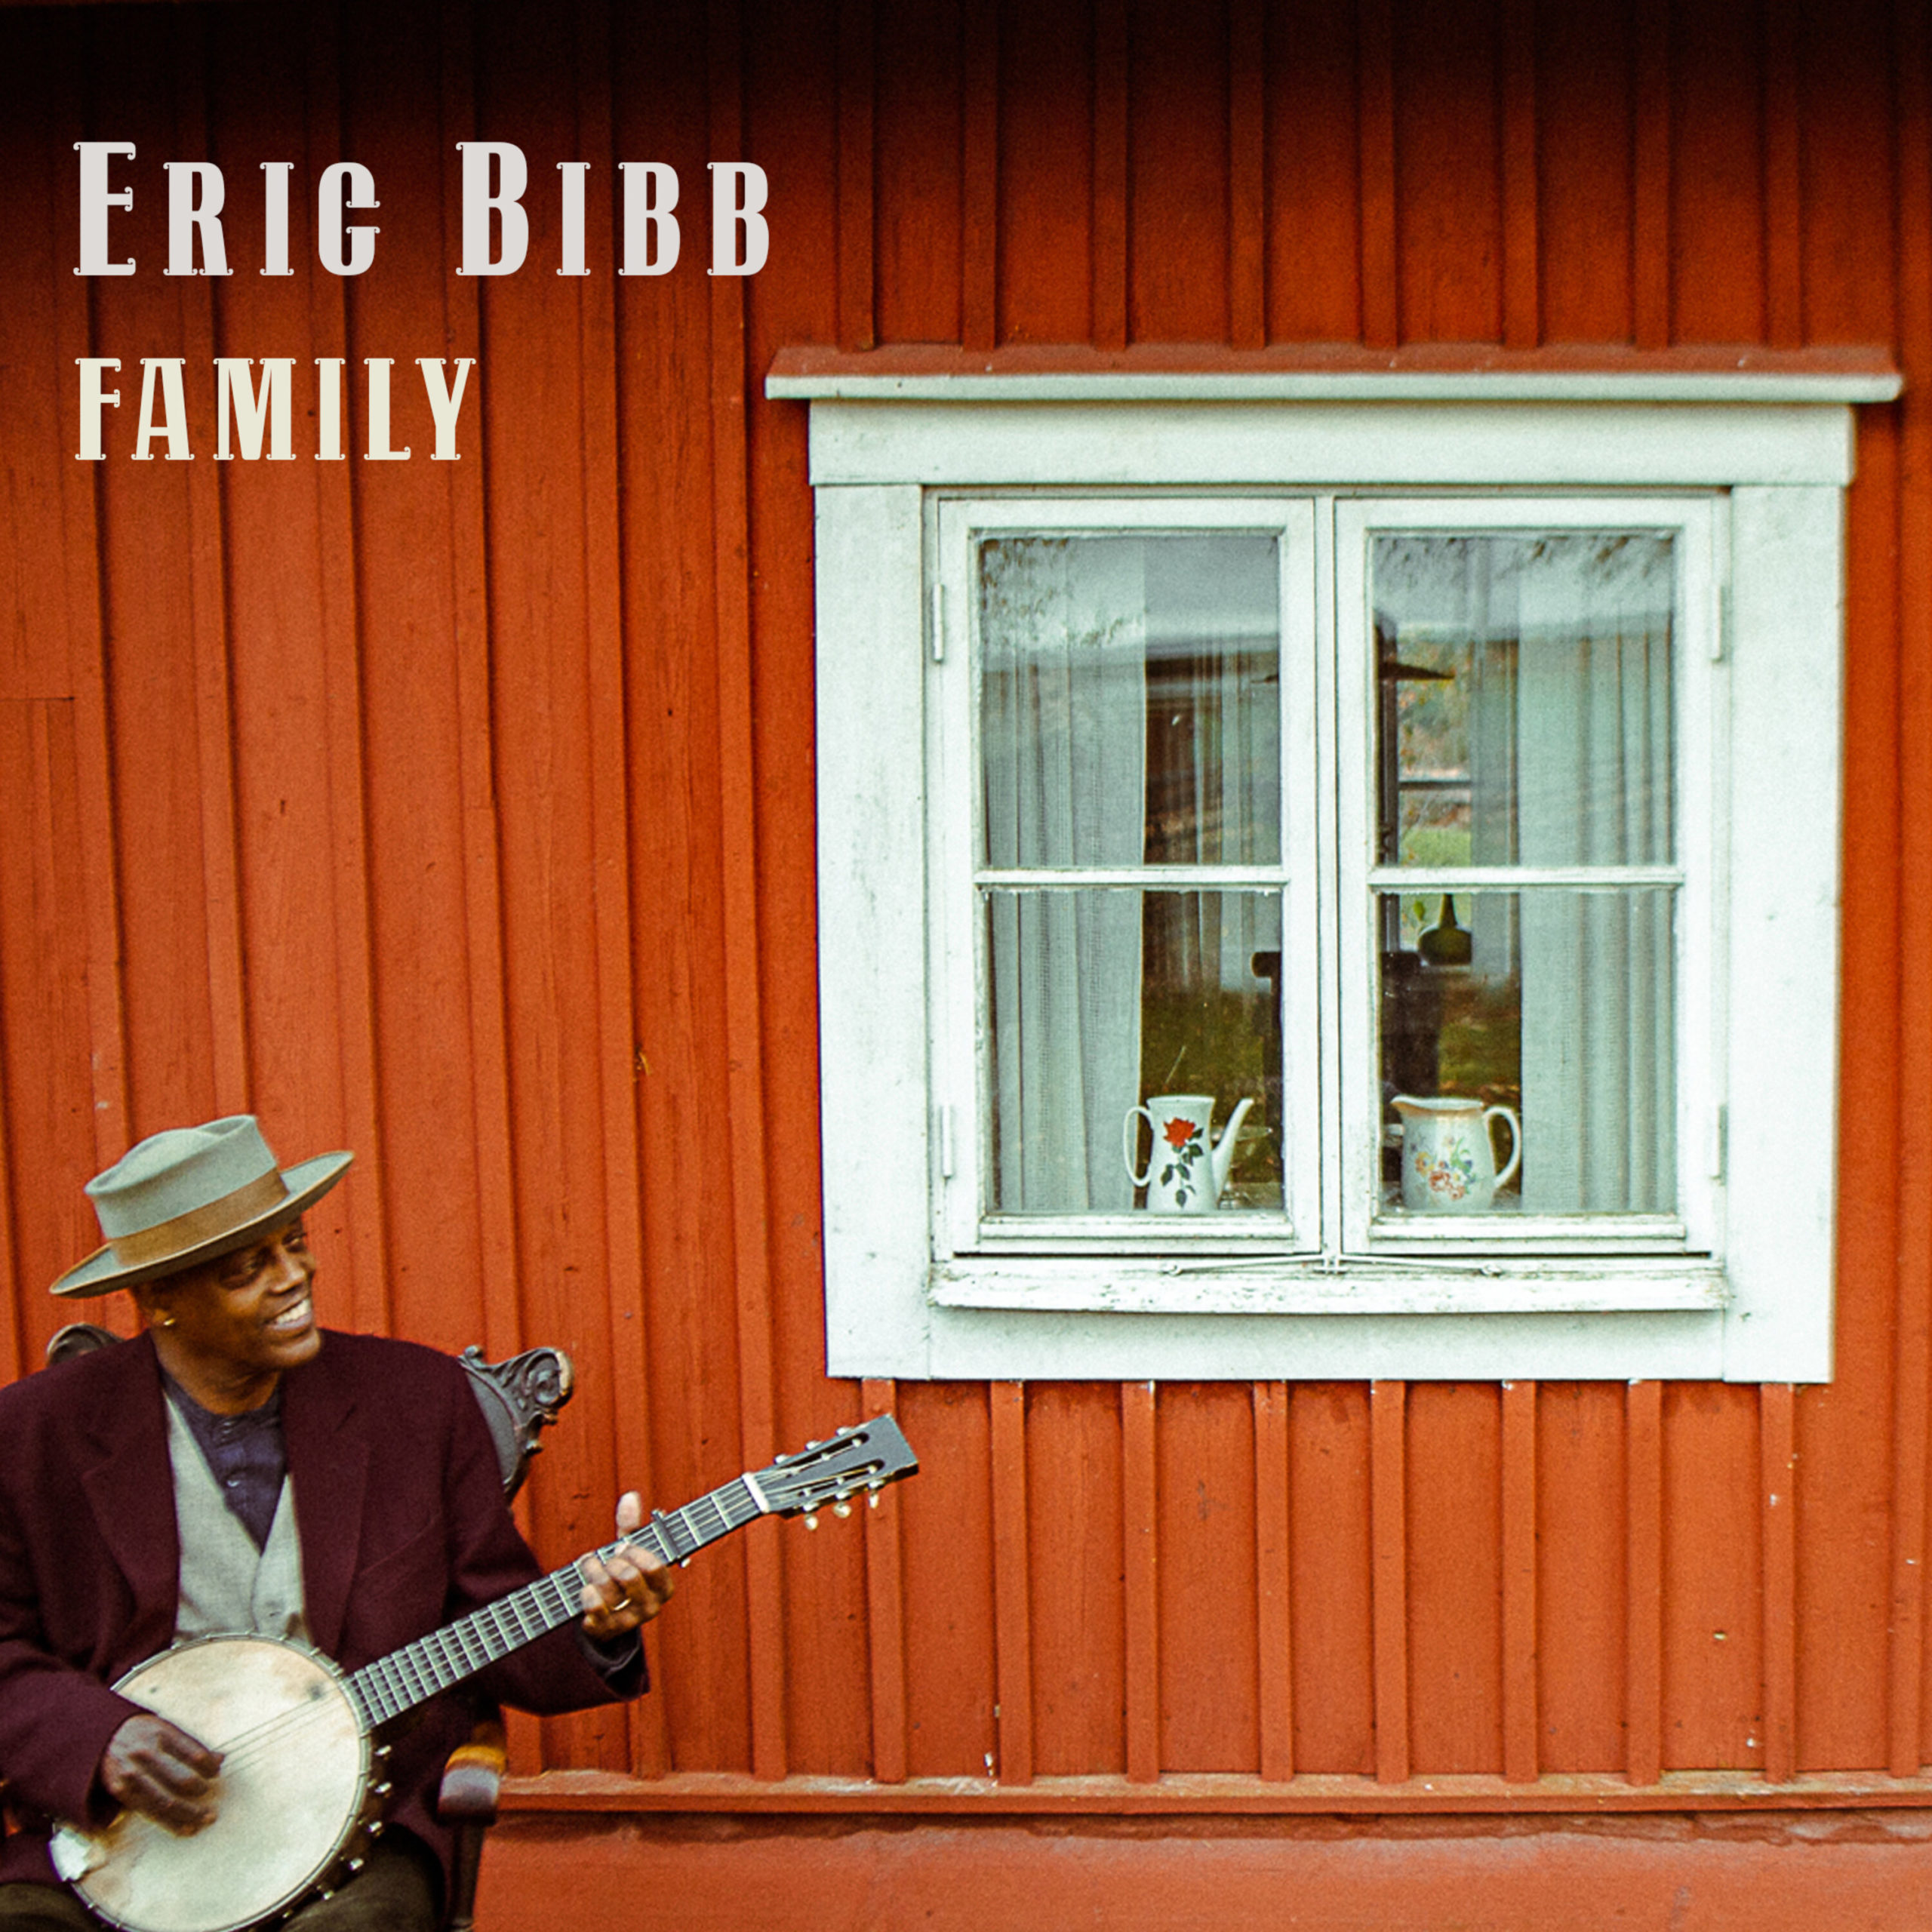 Eric Bibb “Family” chez Dixiefrog